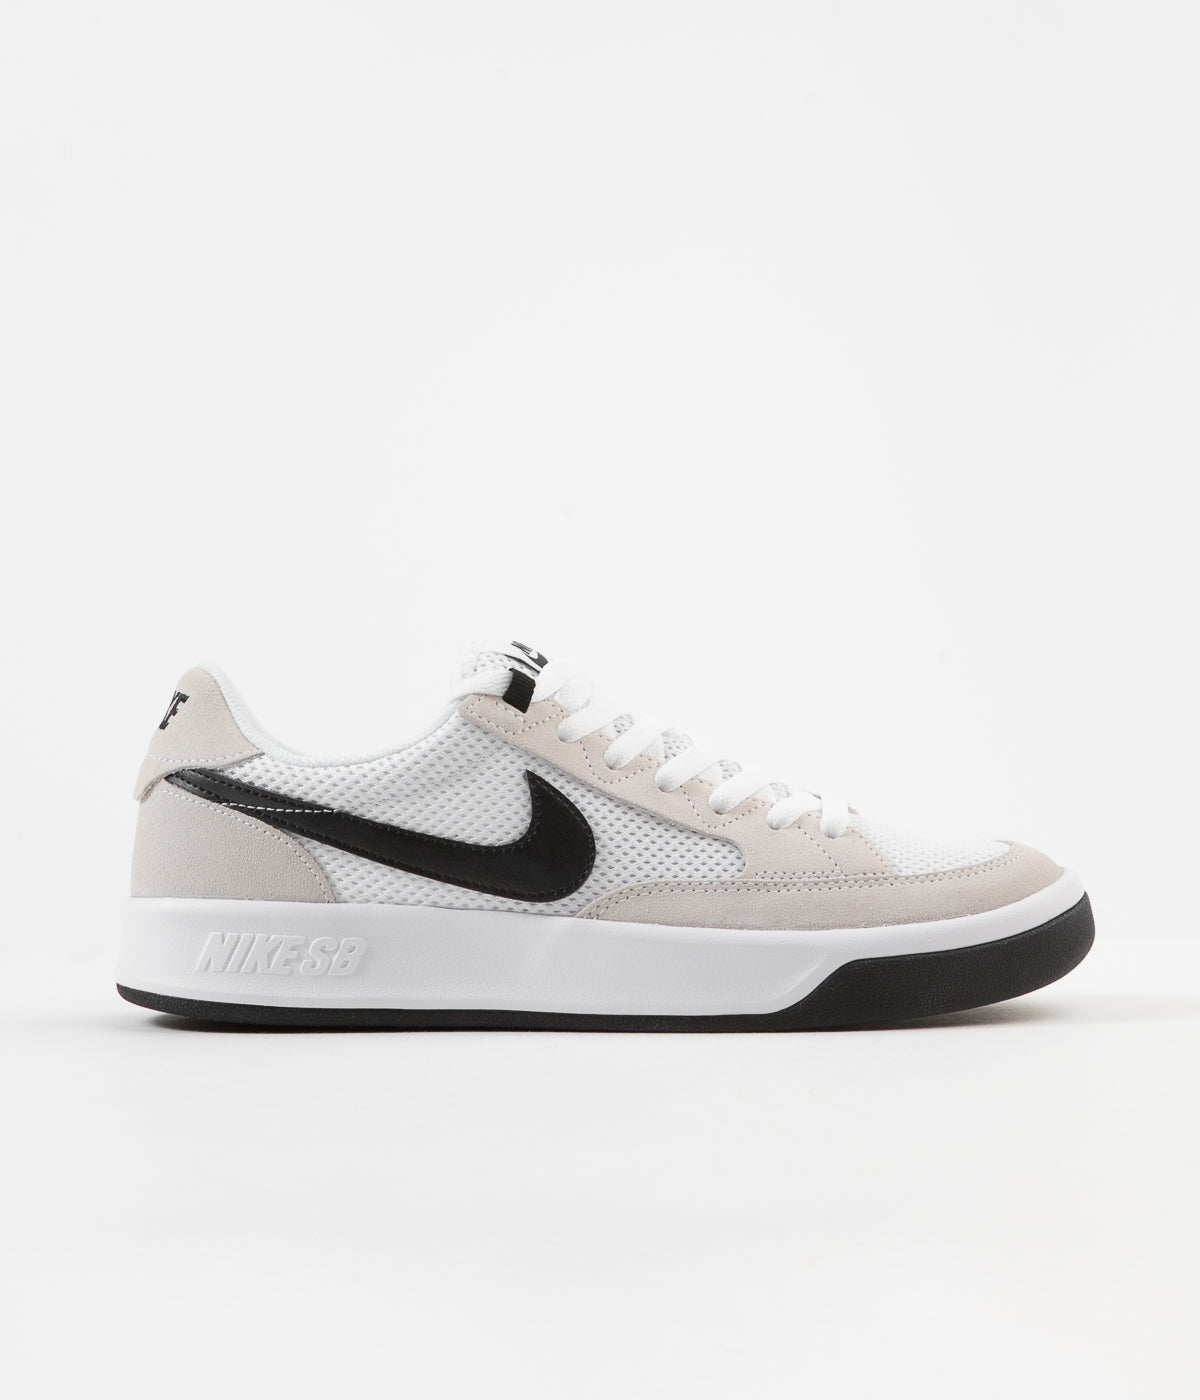 Nike SB Adversary Shoes - White / Black 